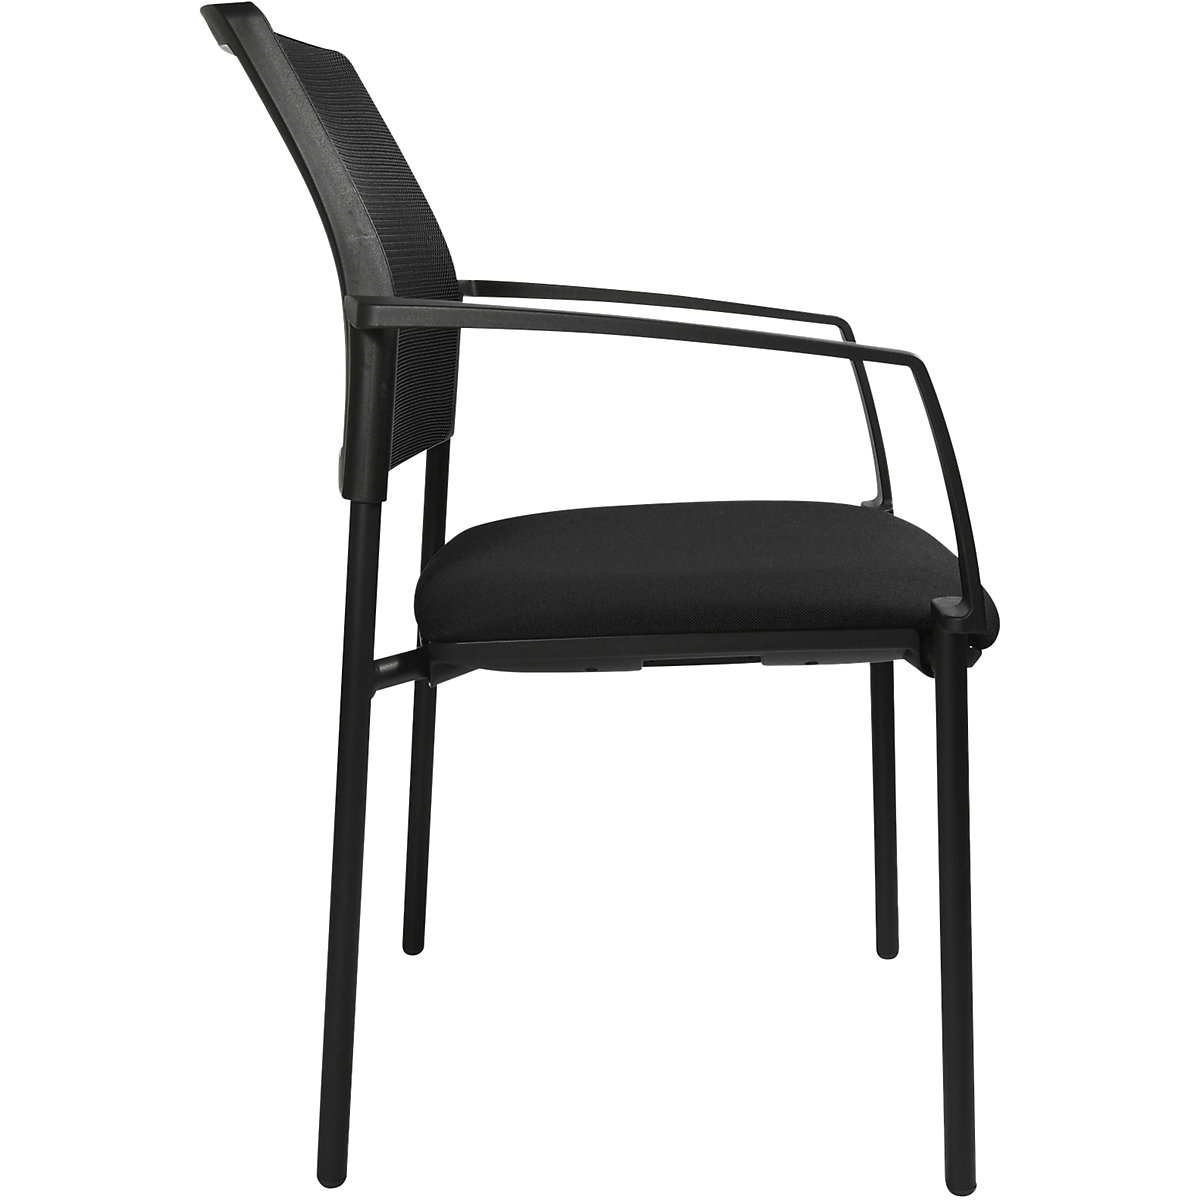 Složiva stolica s mrežastim naslonom – Topstar (Prikaz proizvoda 9)